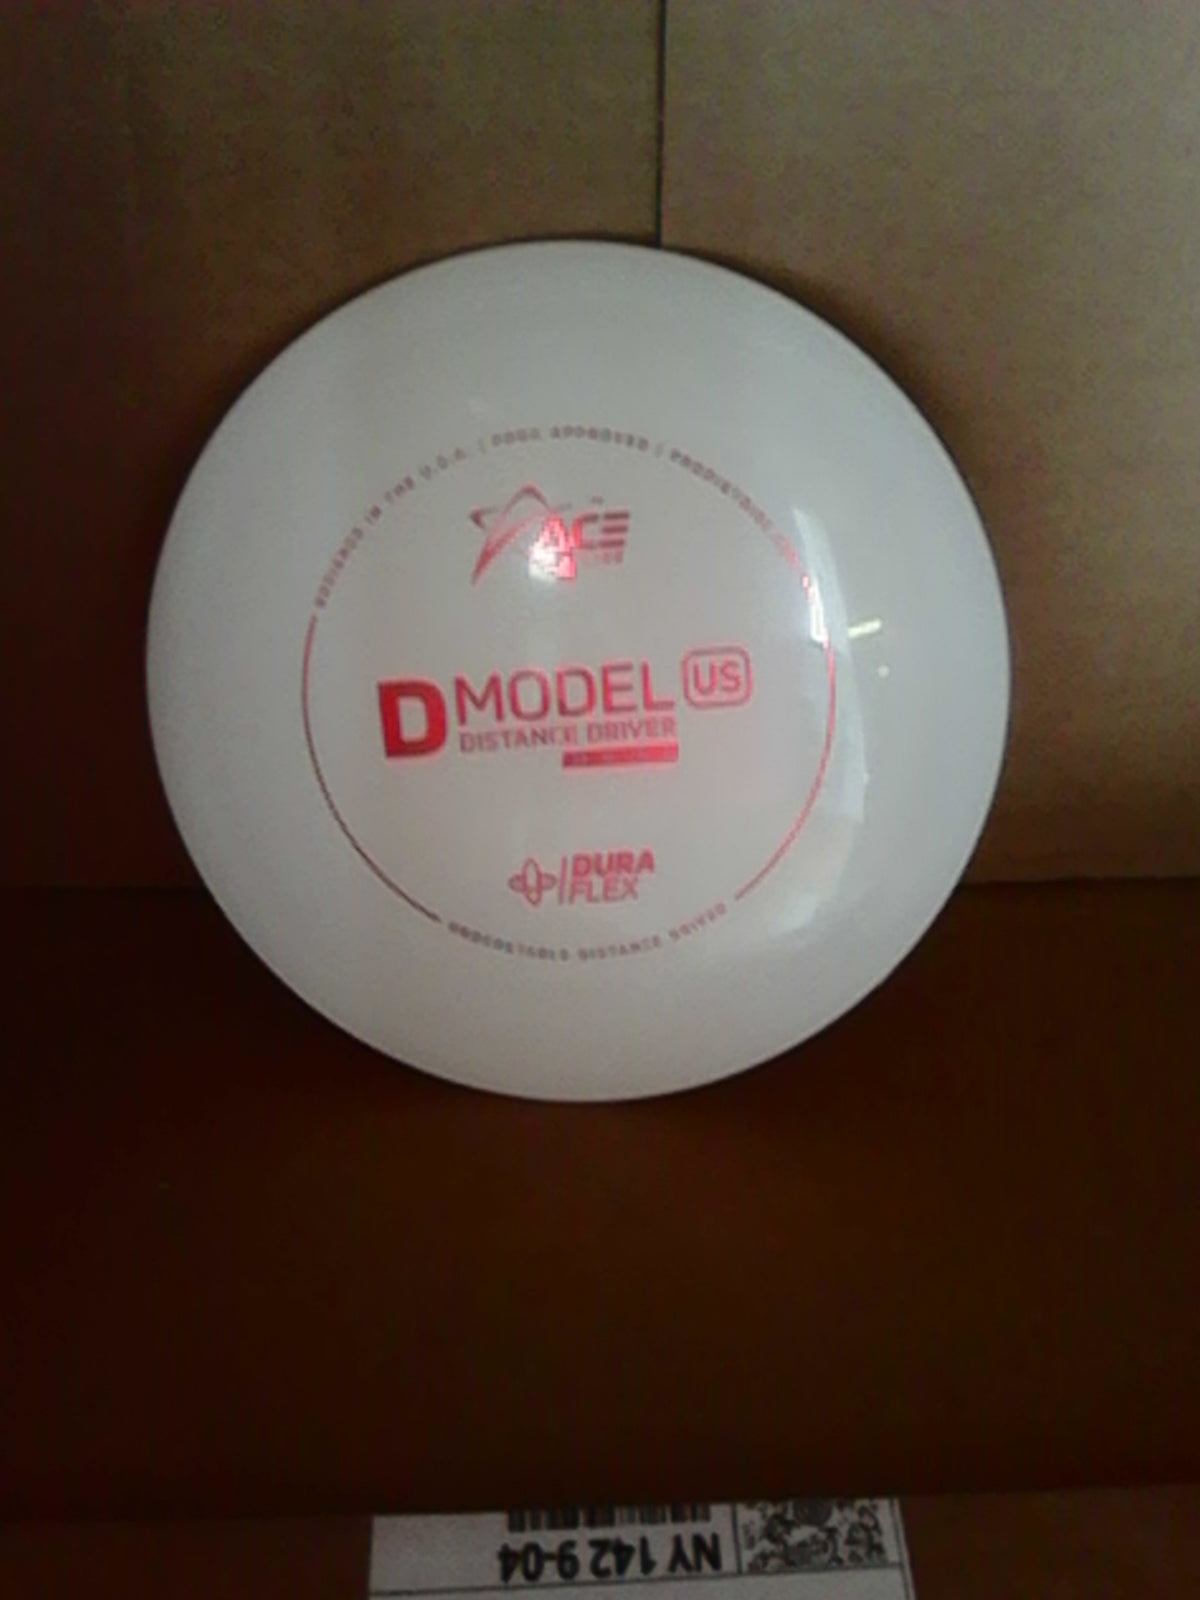 Prodigy Ace Line Dura flex D Model US 173 Grams (DUS9)